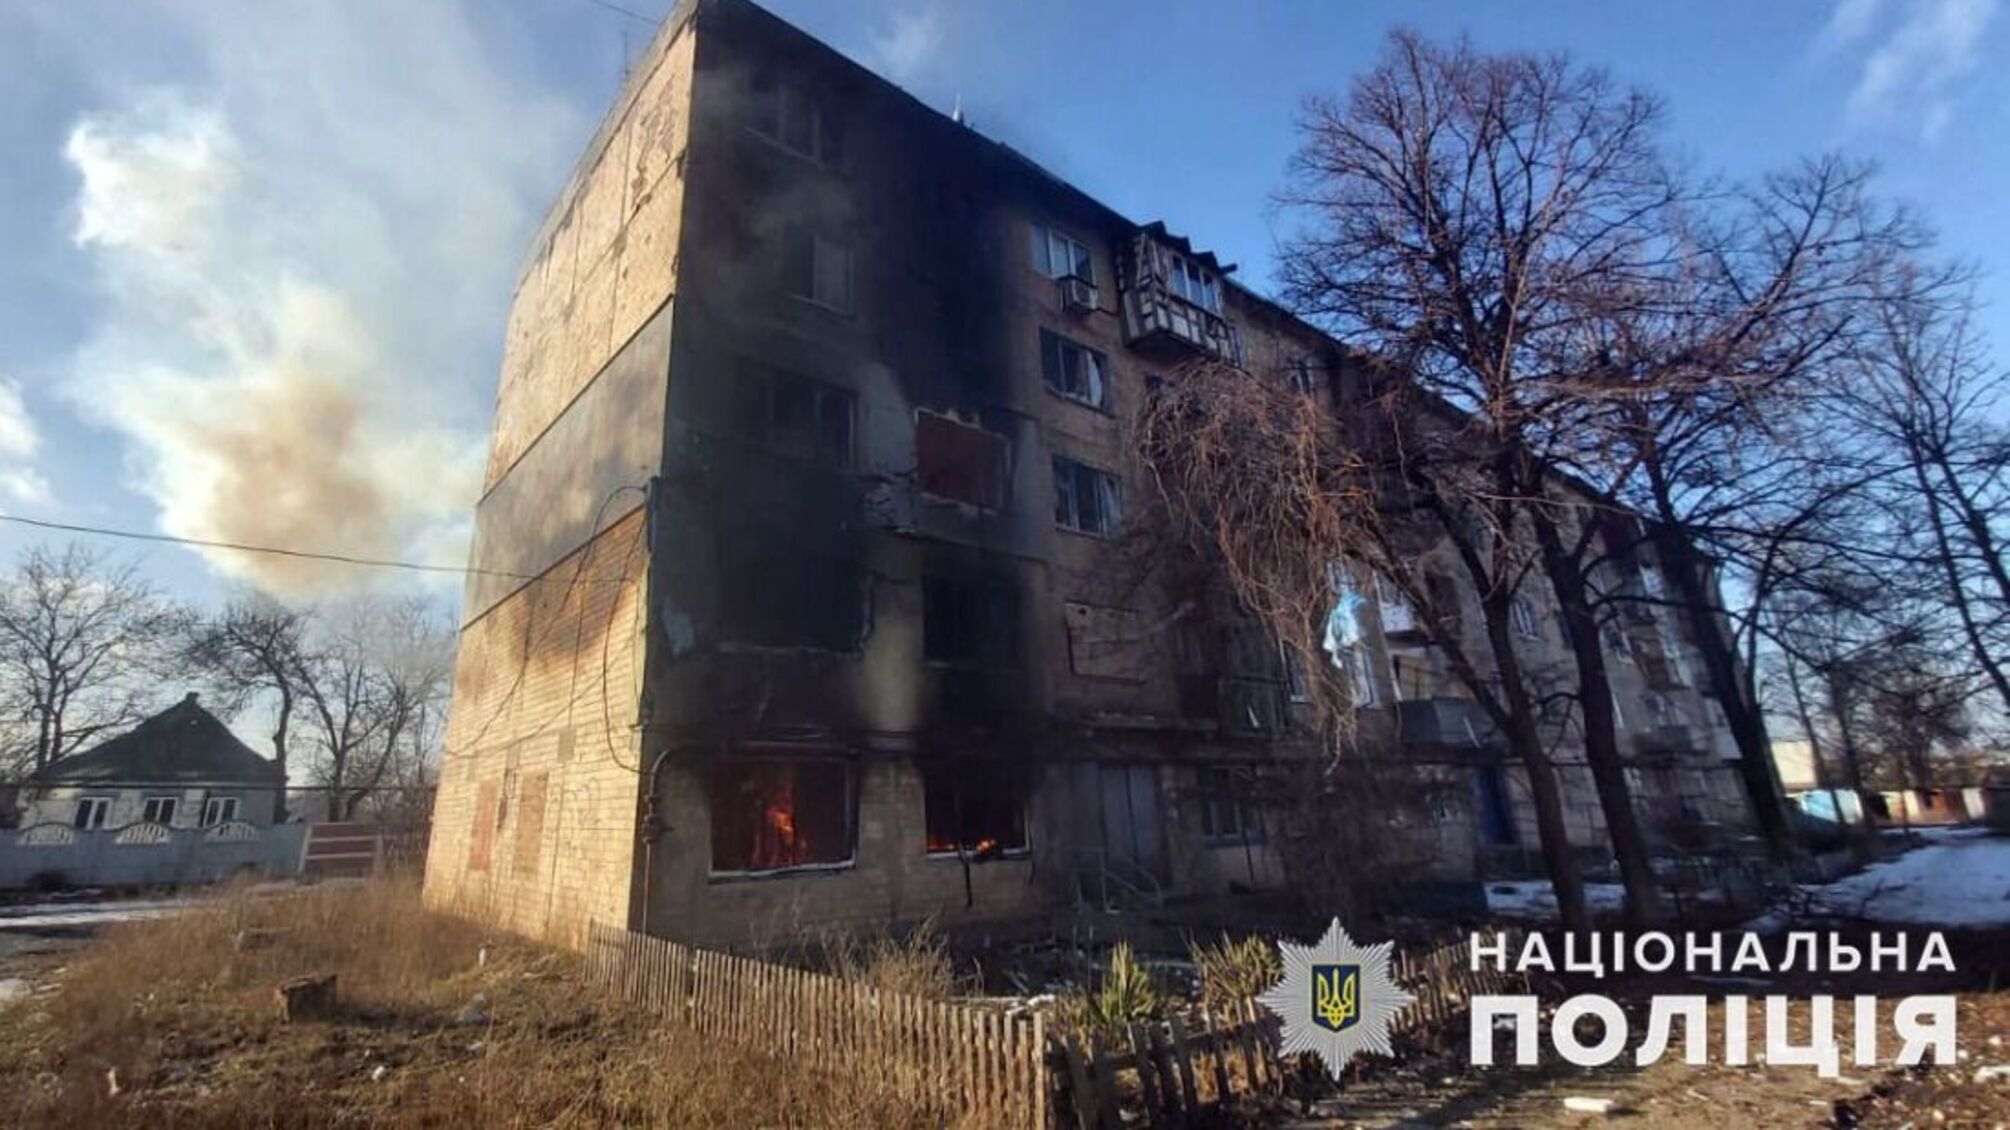 'Грады', 'Ураганы', артиллерия – в Донецкой области армия рф атаковала мирное население (фото)